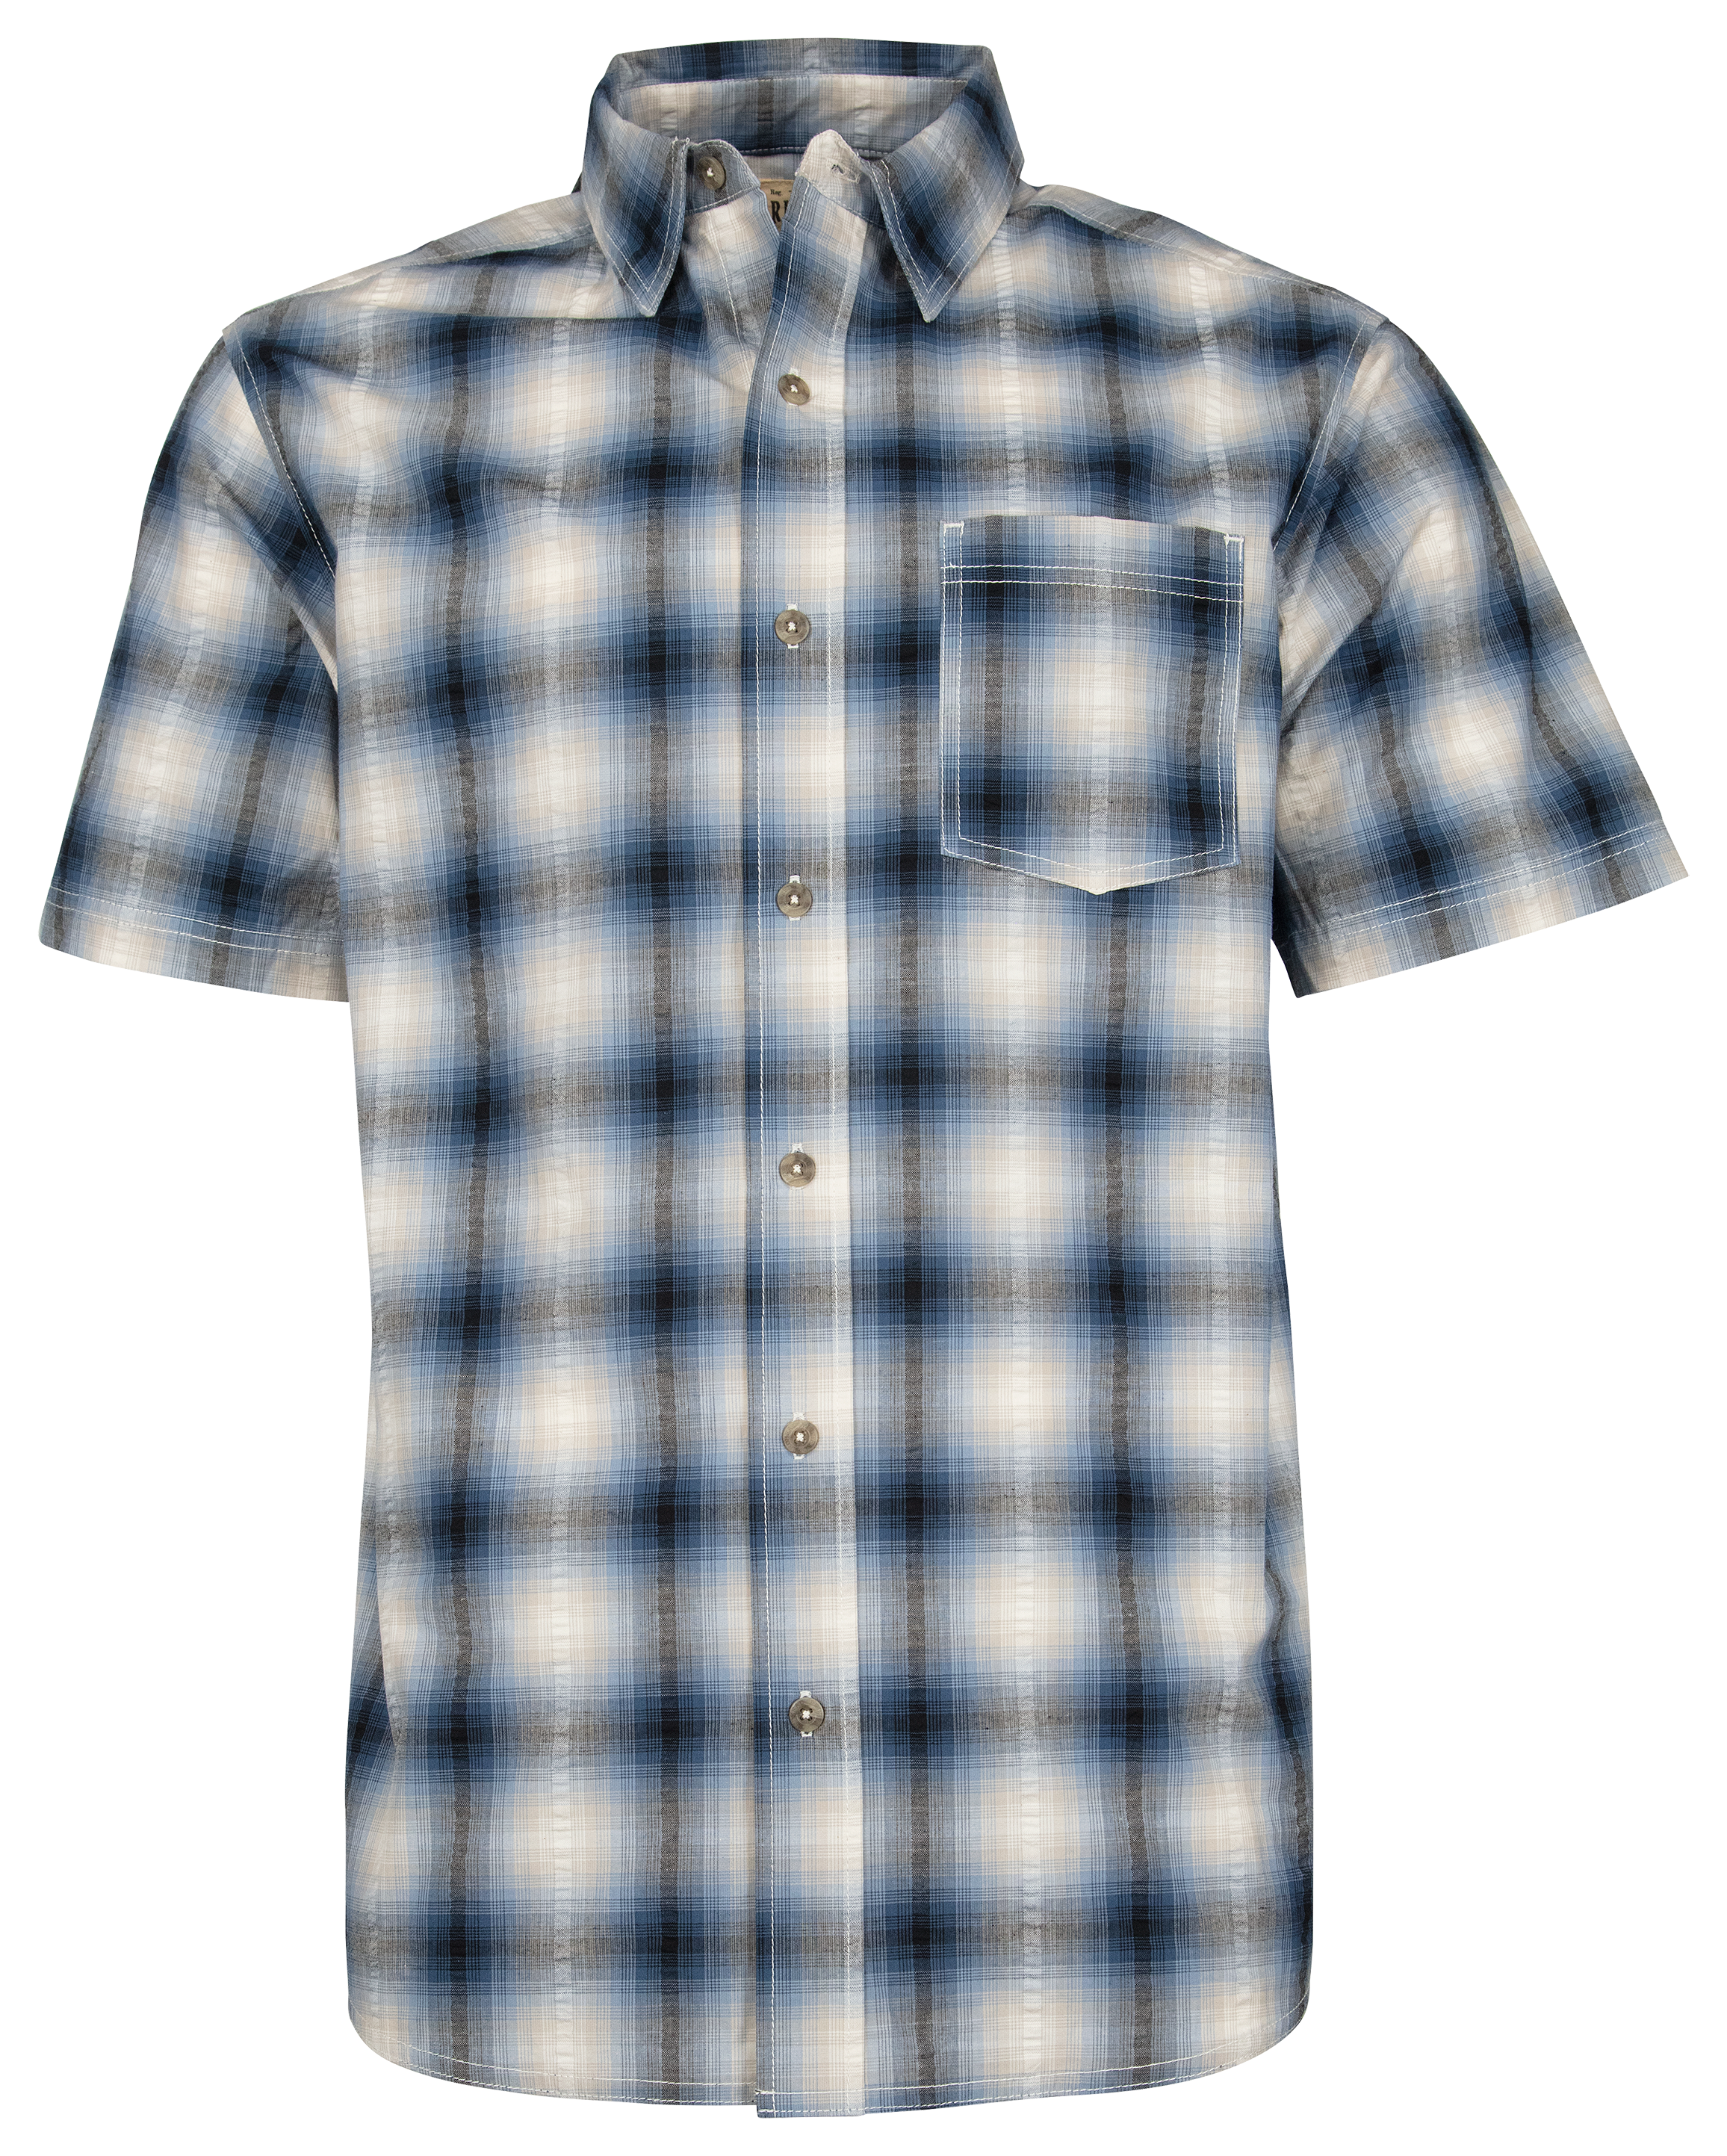 Redhead Seersucker Plaid Short-Sleeve Shirt for Men - Bluebird - S